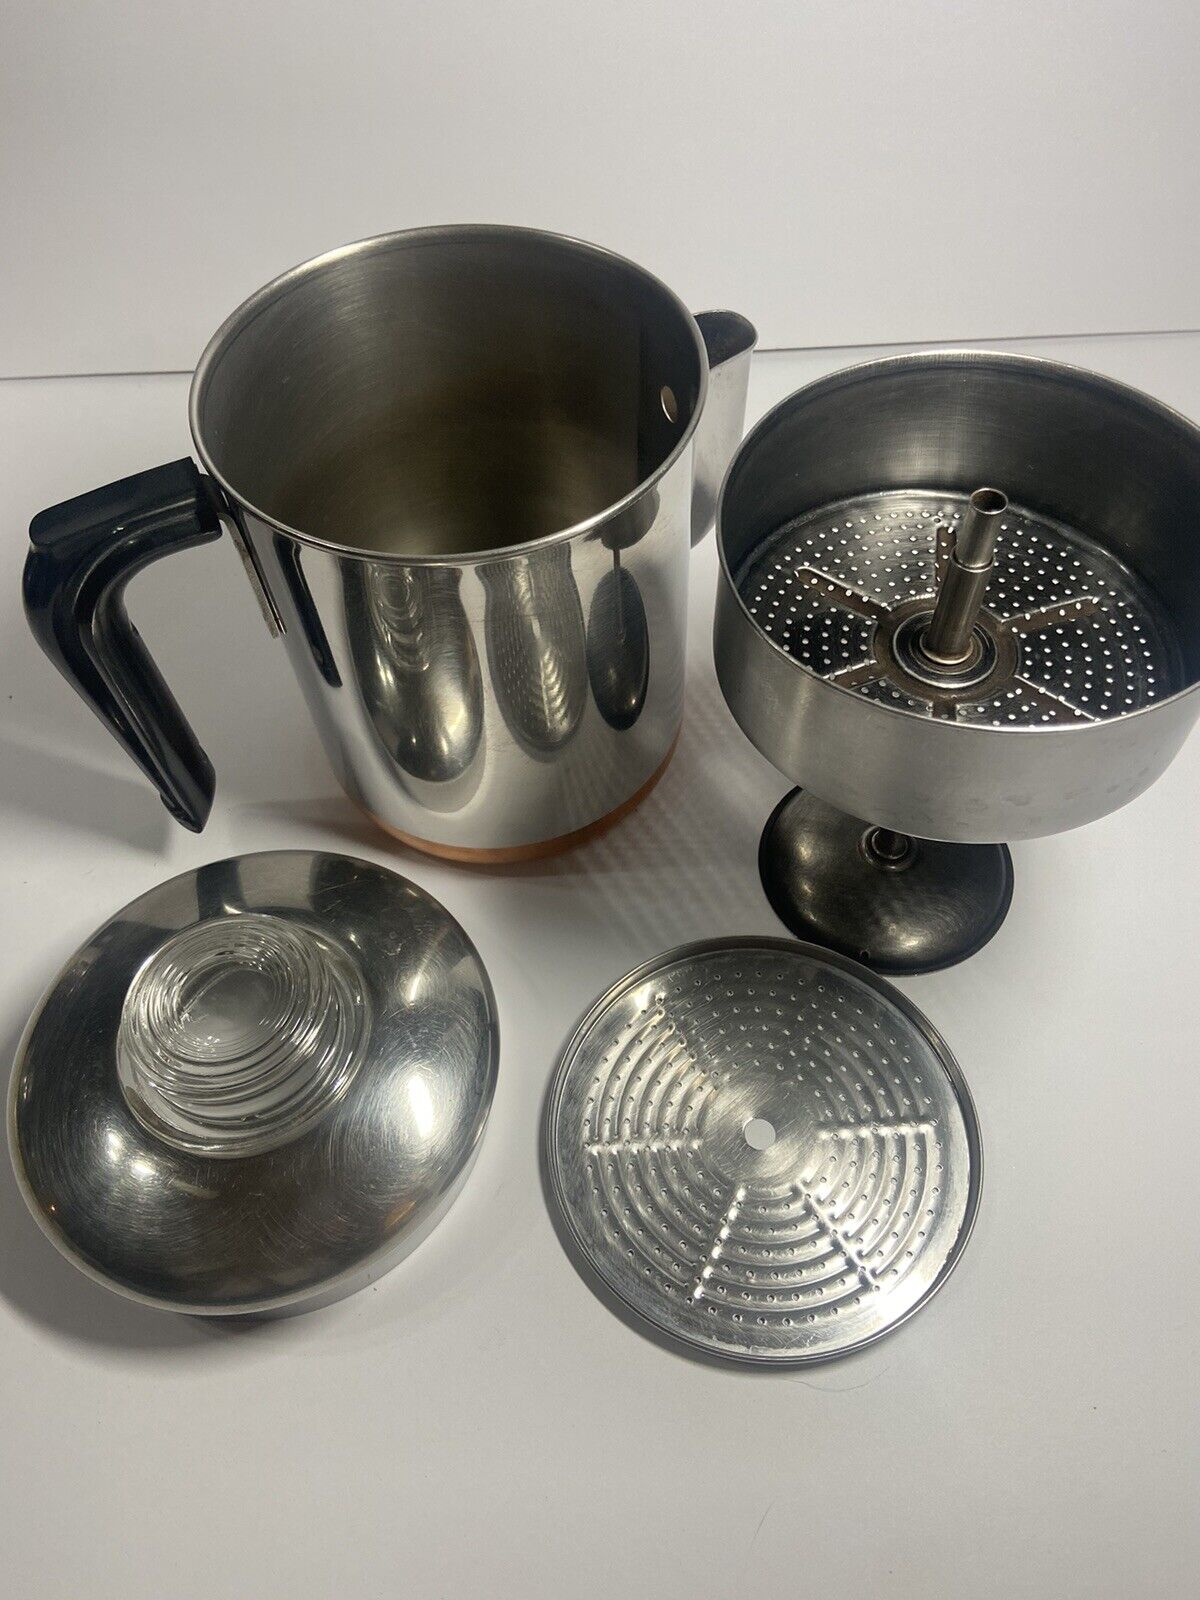 Vintage Revere Ware 1801 6 Cup Percolator Stove Top Coffee Pot Copper Clad USA